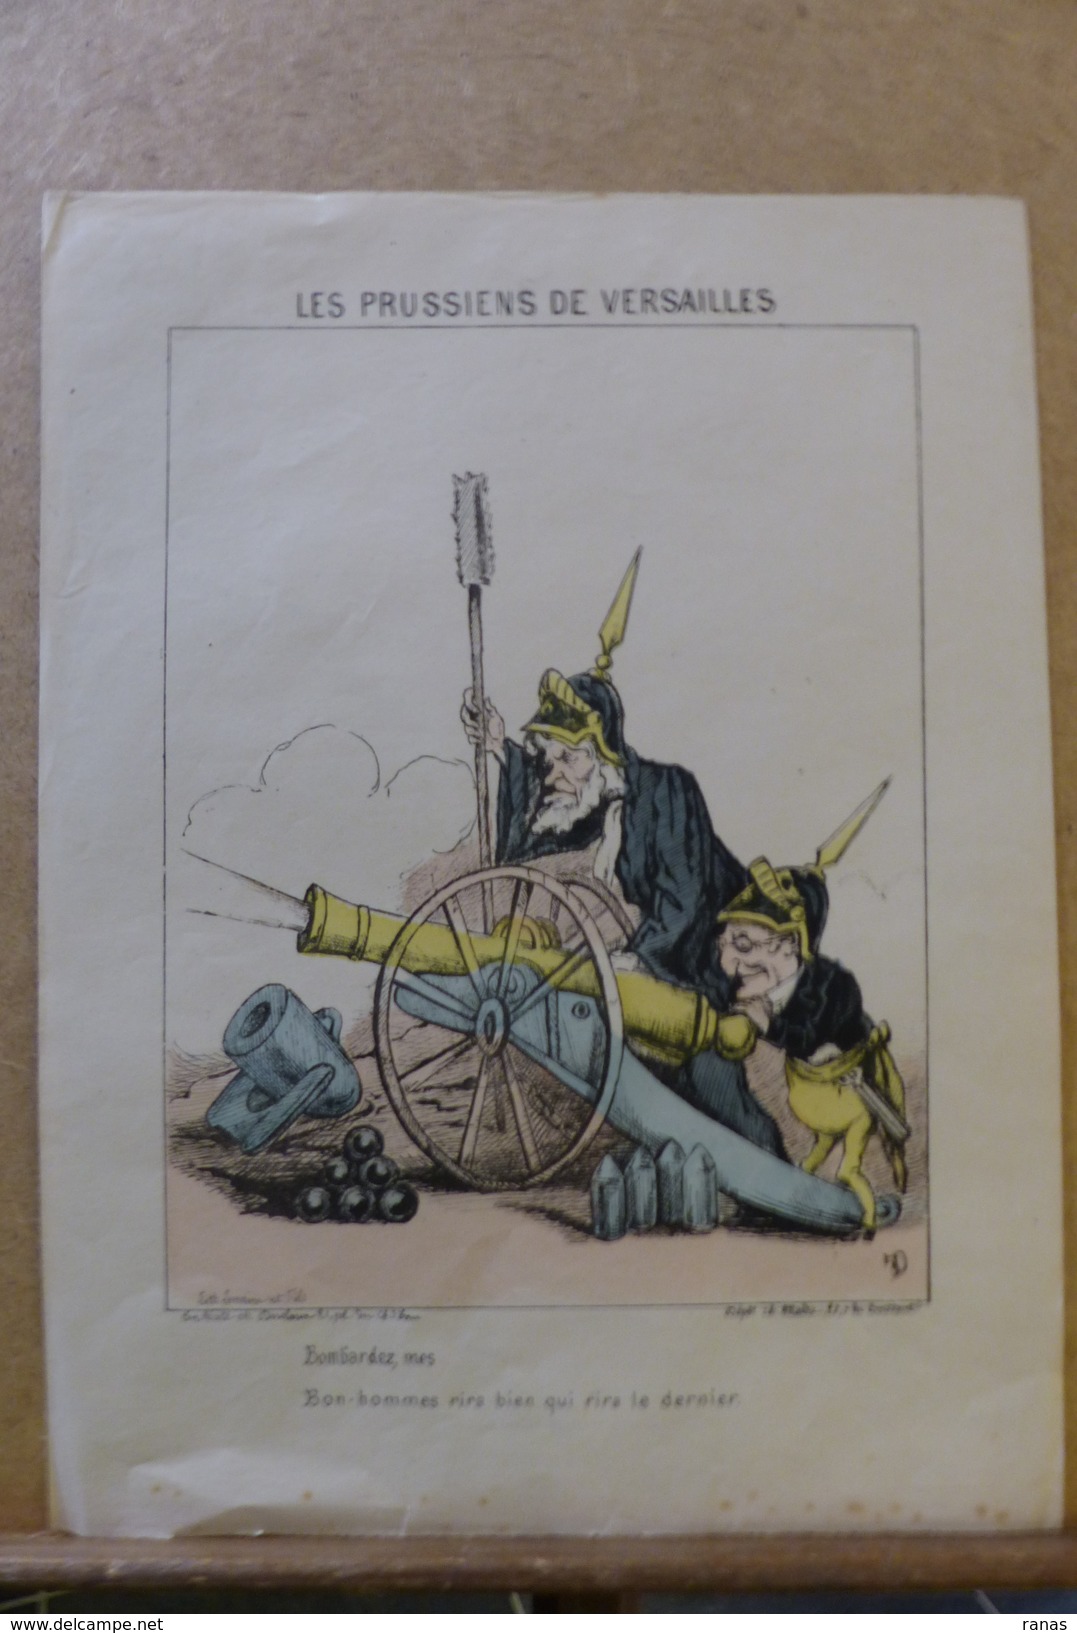 Estampe Gravure Satirique Caricature D'époque 1870  La Commune De Paris Auguste THIERS FAVRE 32,5 X 24,5 - Estampes & Gravures